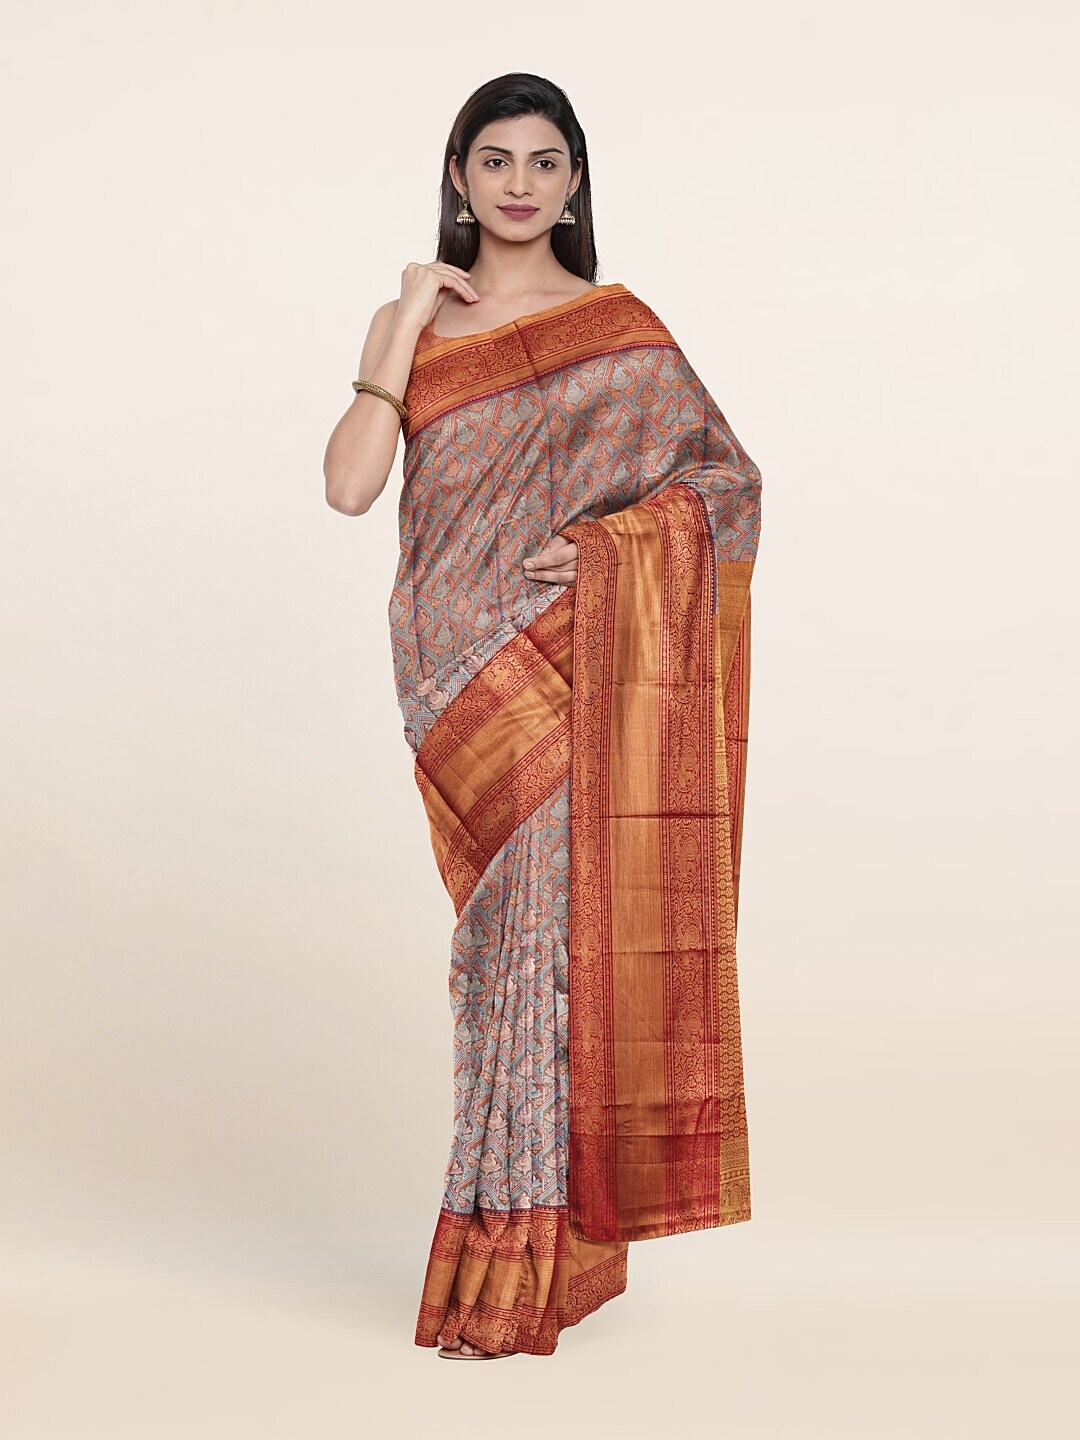 Pothys Blue & Red Woven Design Zari Pure Silk Saree Price in India